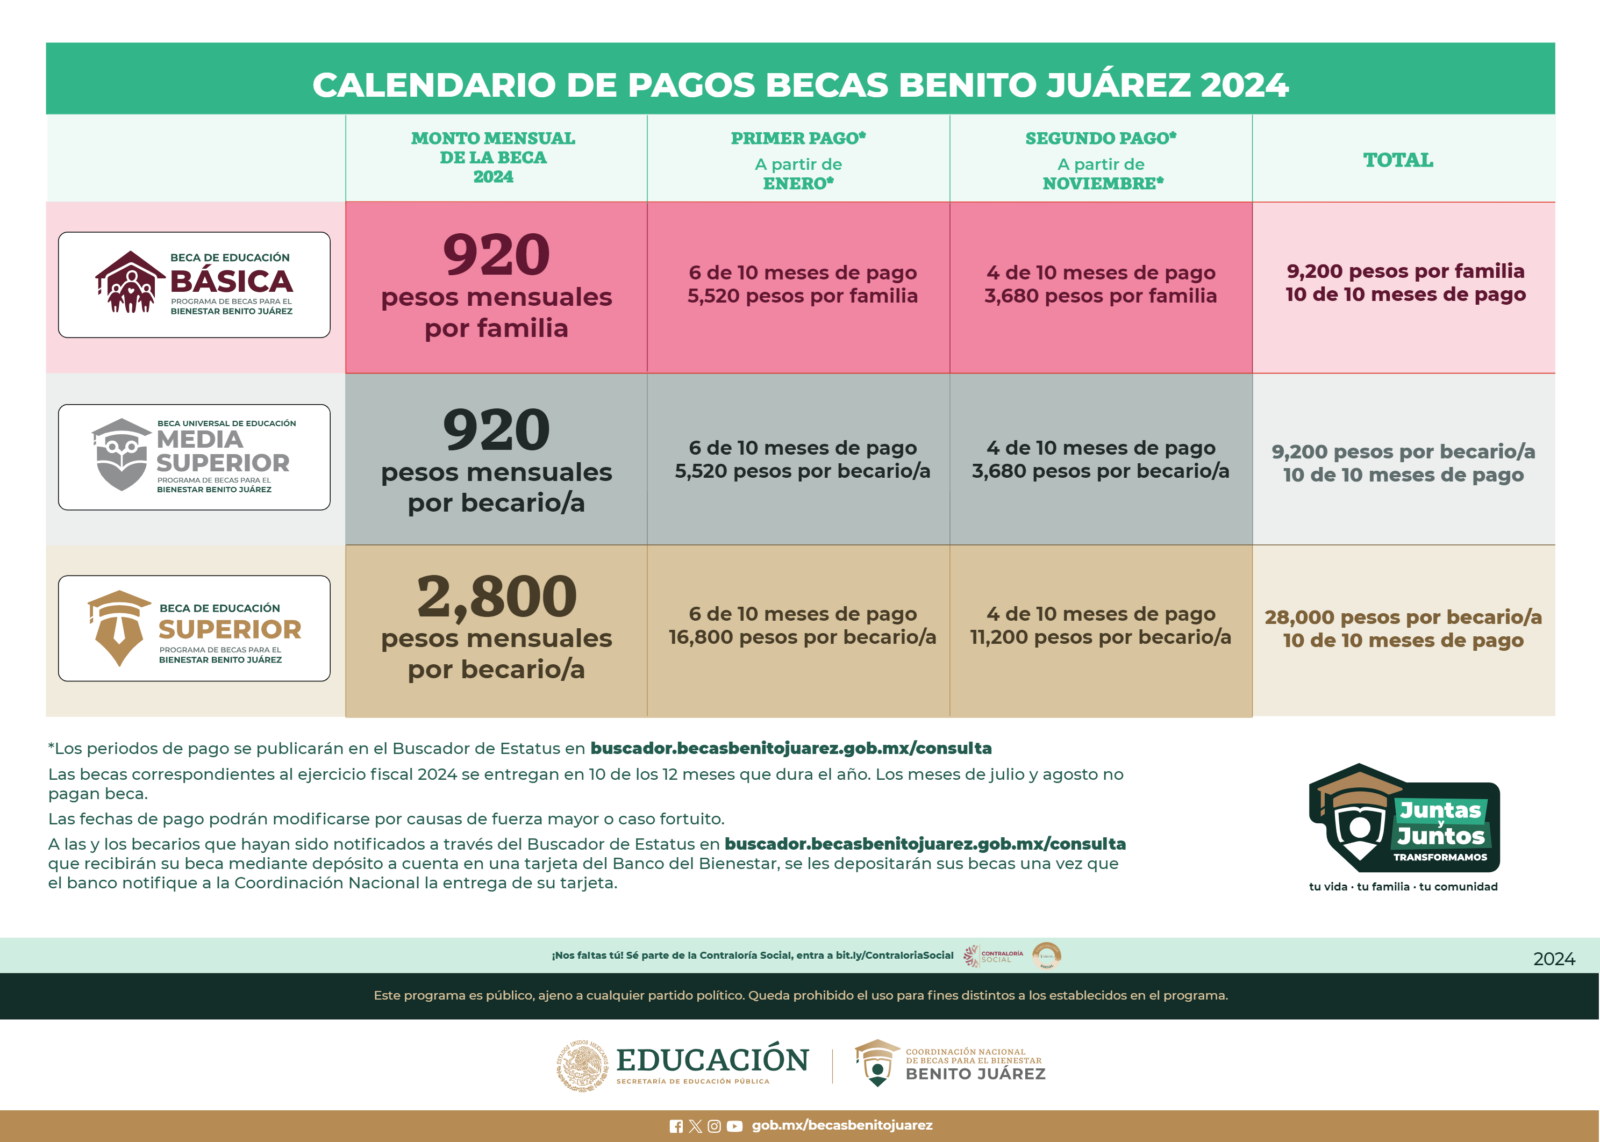 ¿Cuándo 'cae' el depósito de la Beca Benito Juárez? Aquí puedes consultar el calendario de pagos